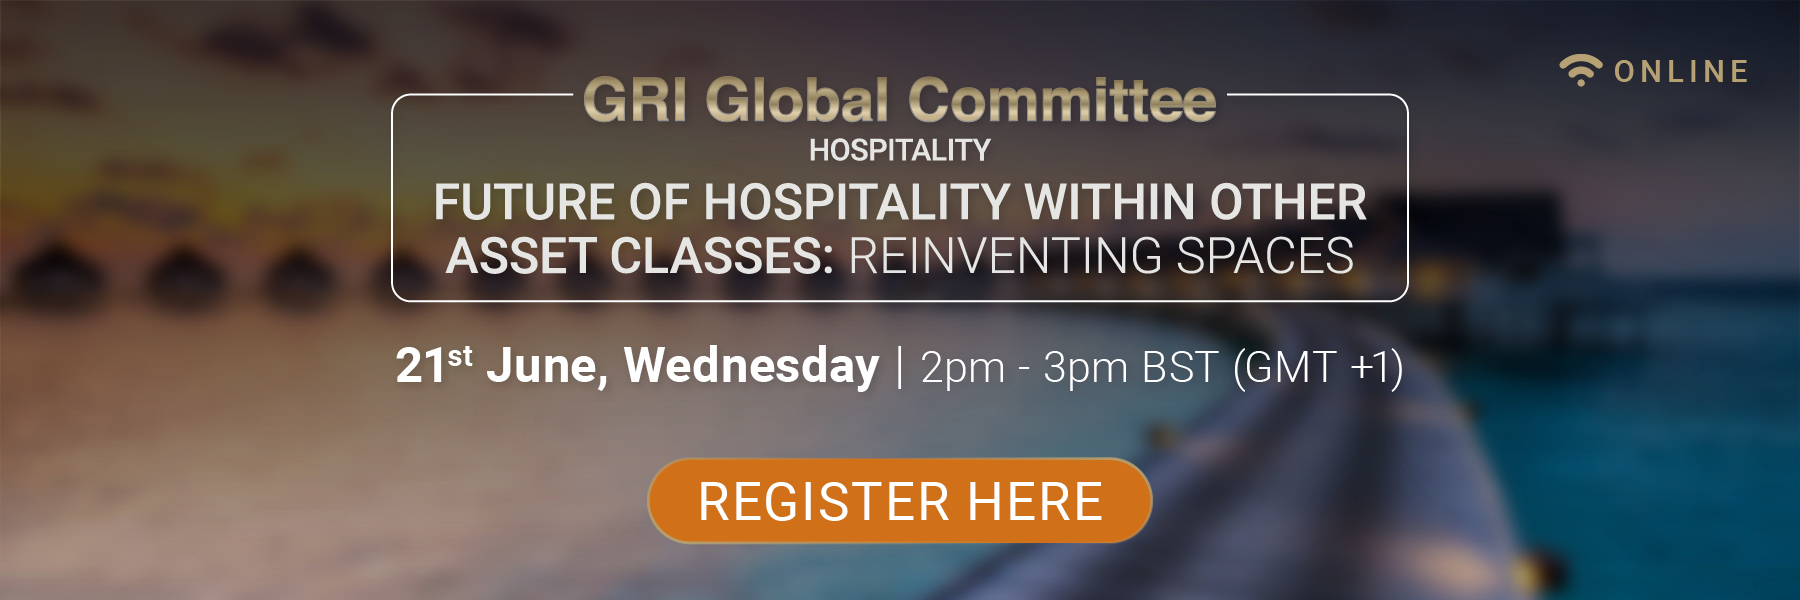 GRI Global Committee Hospitality